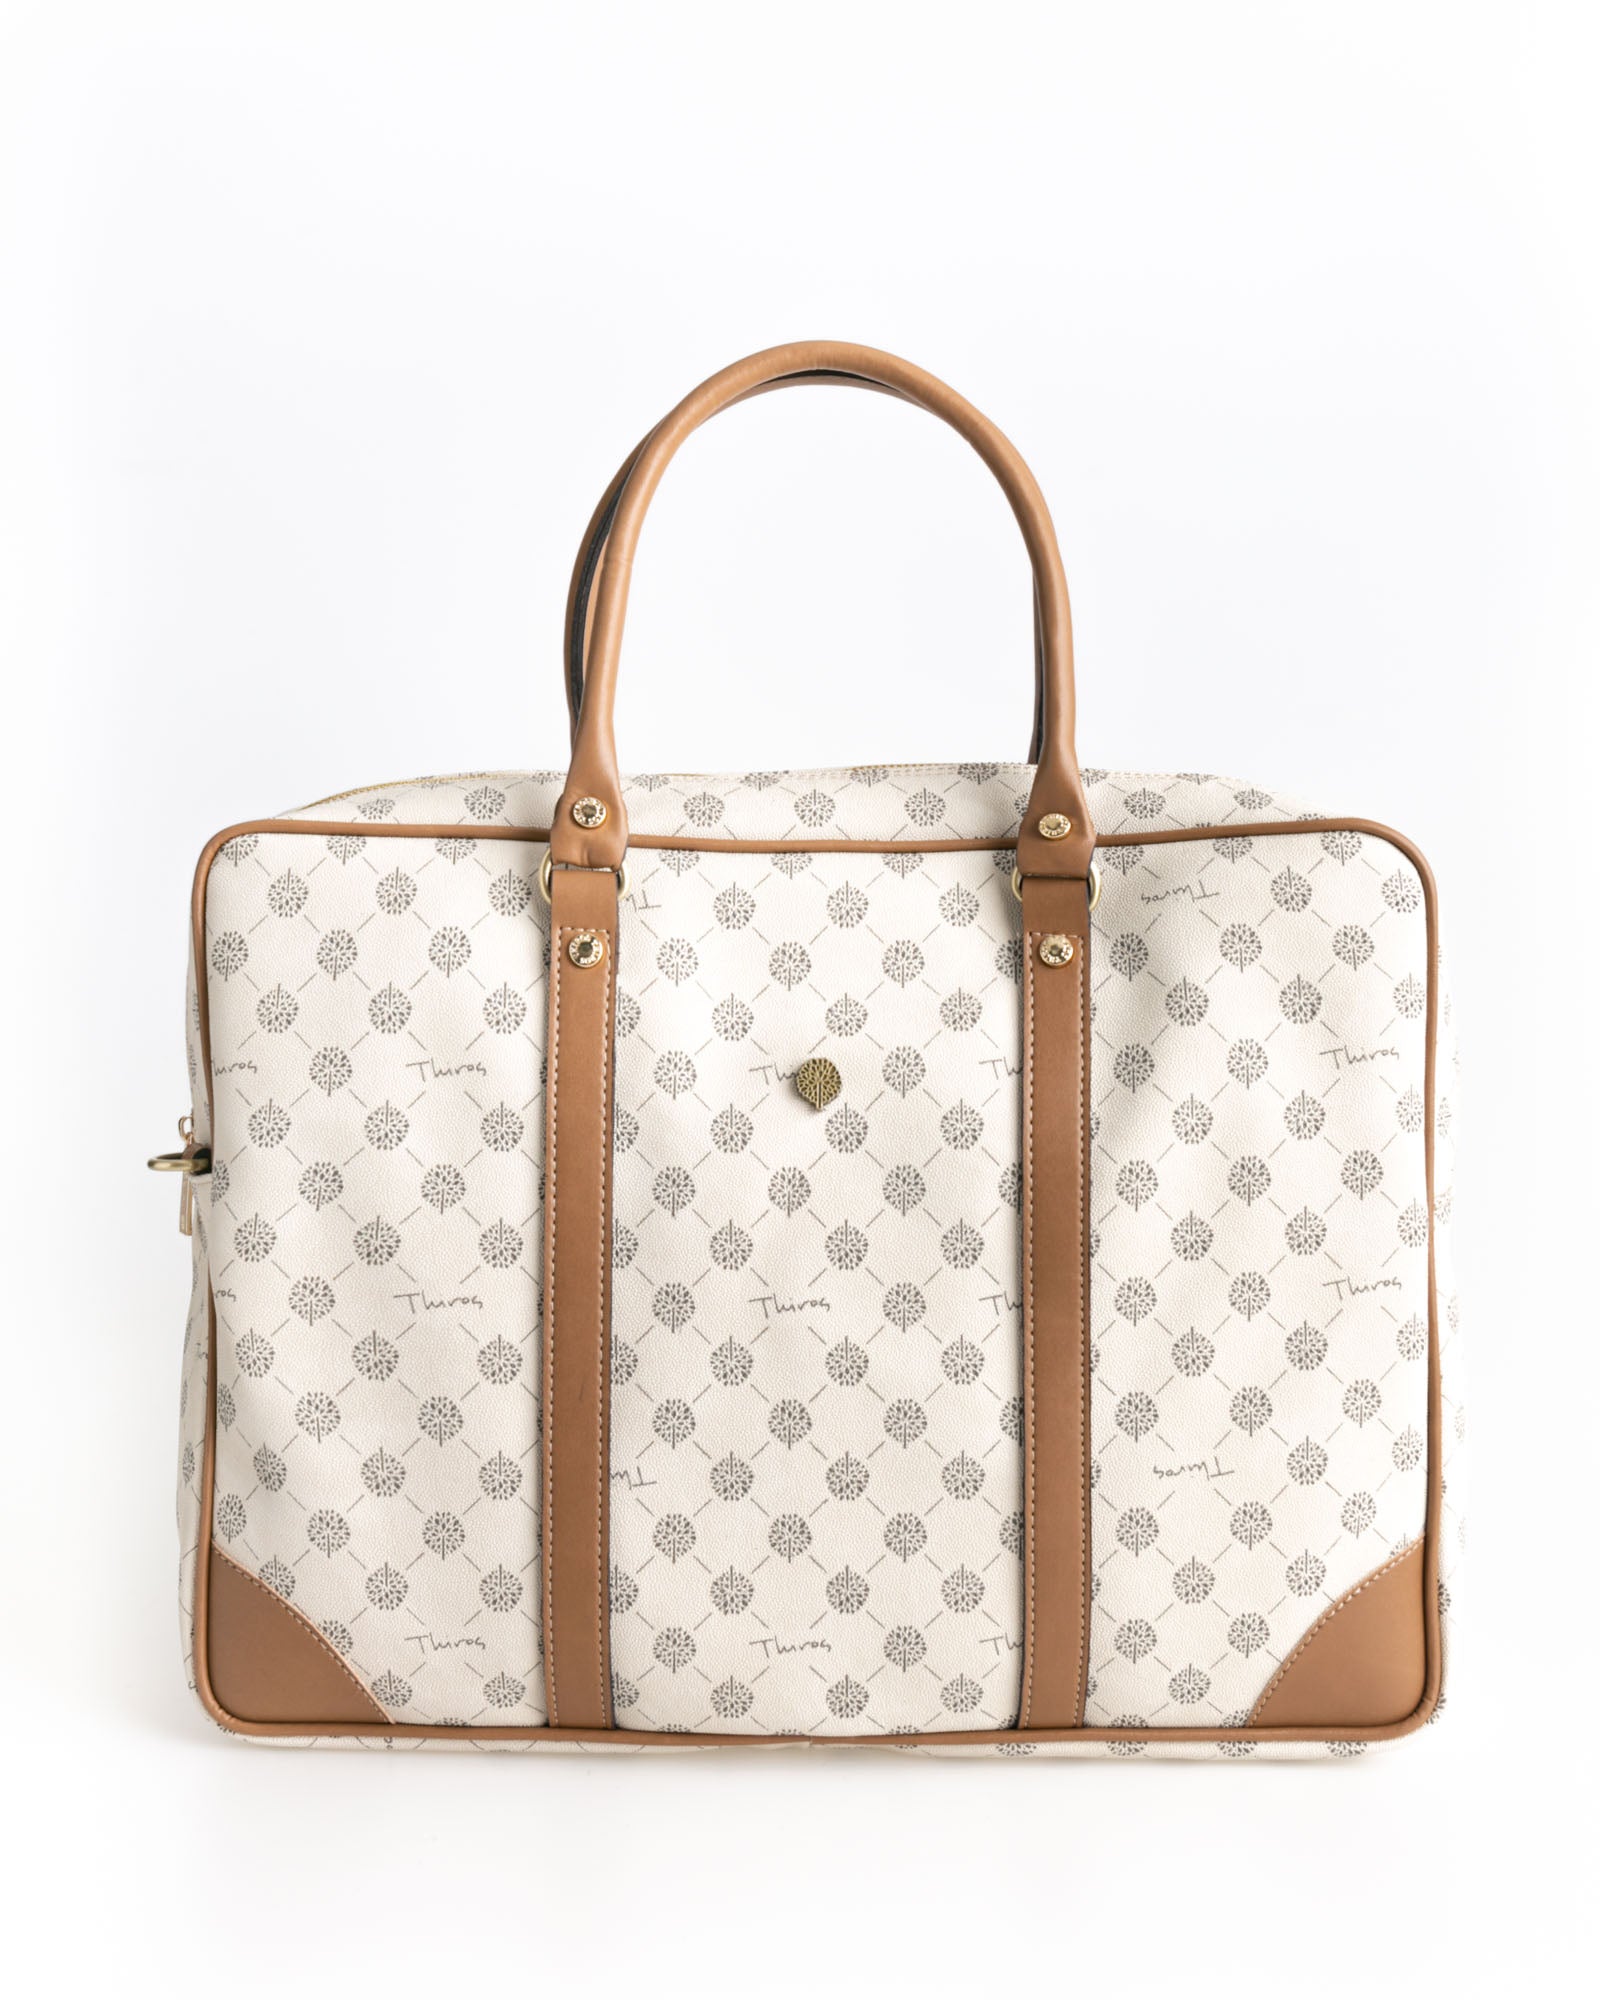 Vintage Olivia business bag